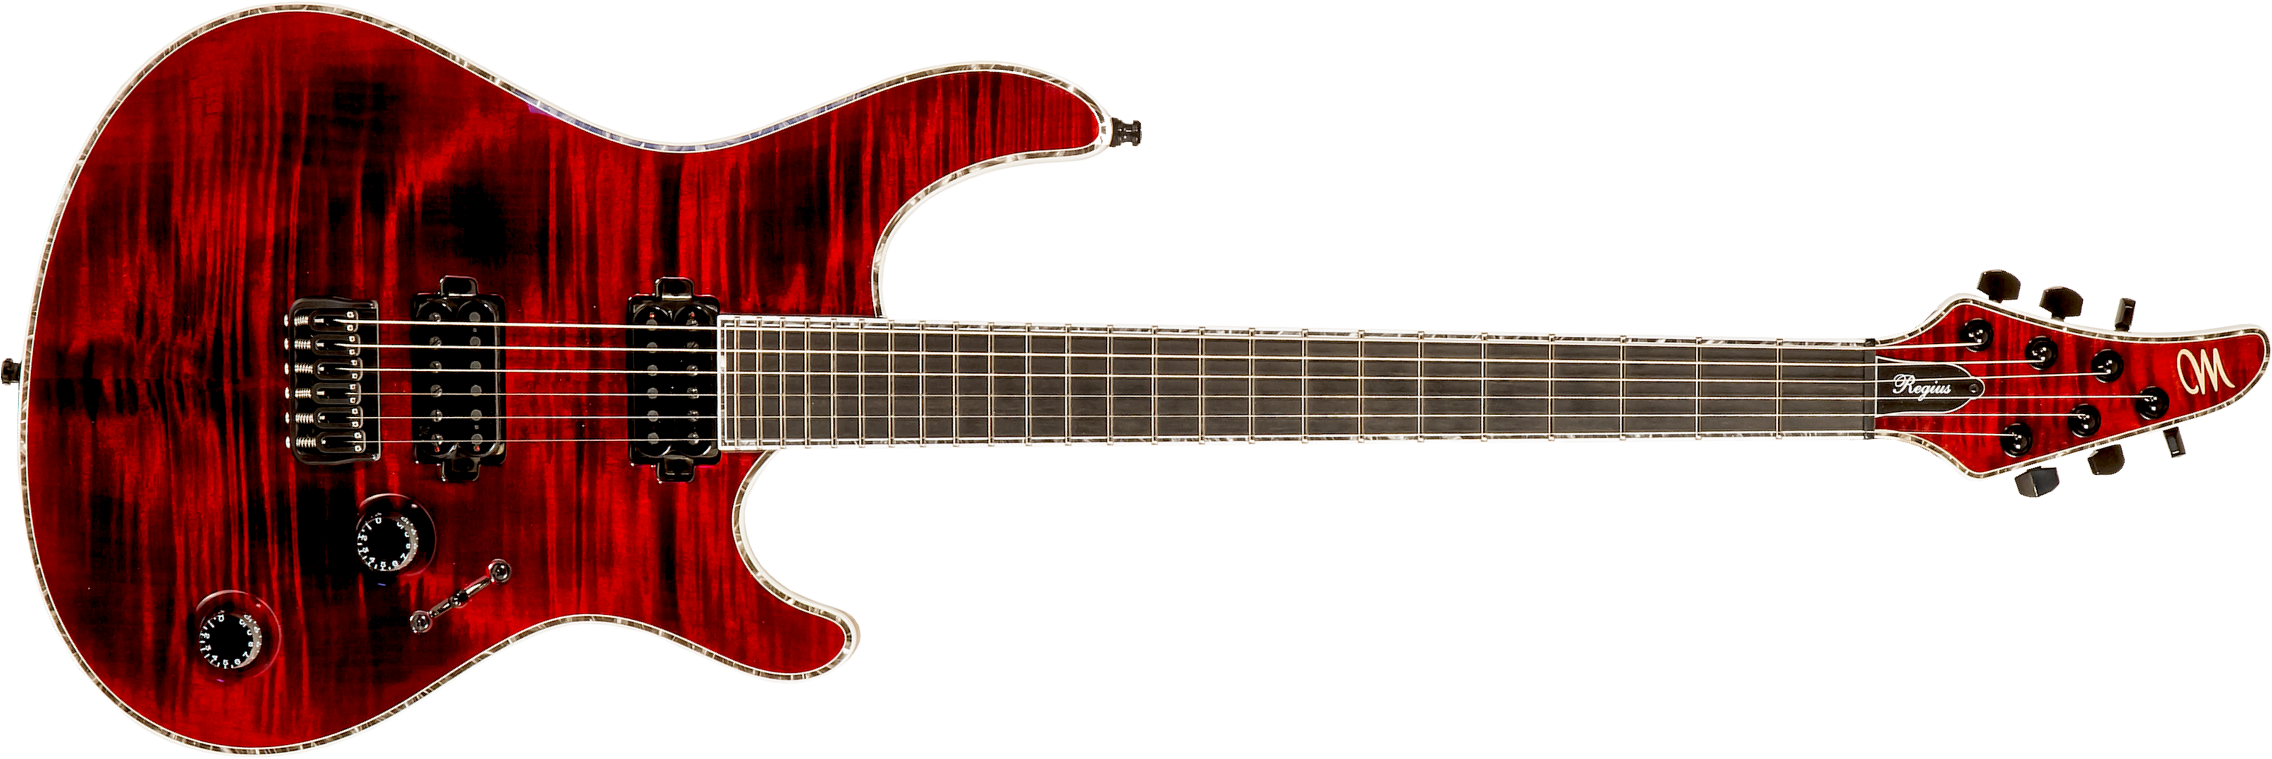 Mayones Guitars Regius 6 Ash 2h Tko Ht Eb #rf2203440 - Dirty Red Burst - Guitarra eléctrica con forma de str. - Main picture